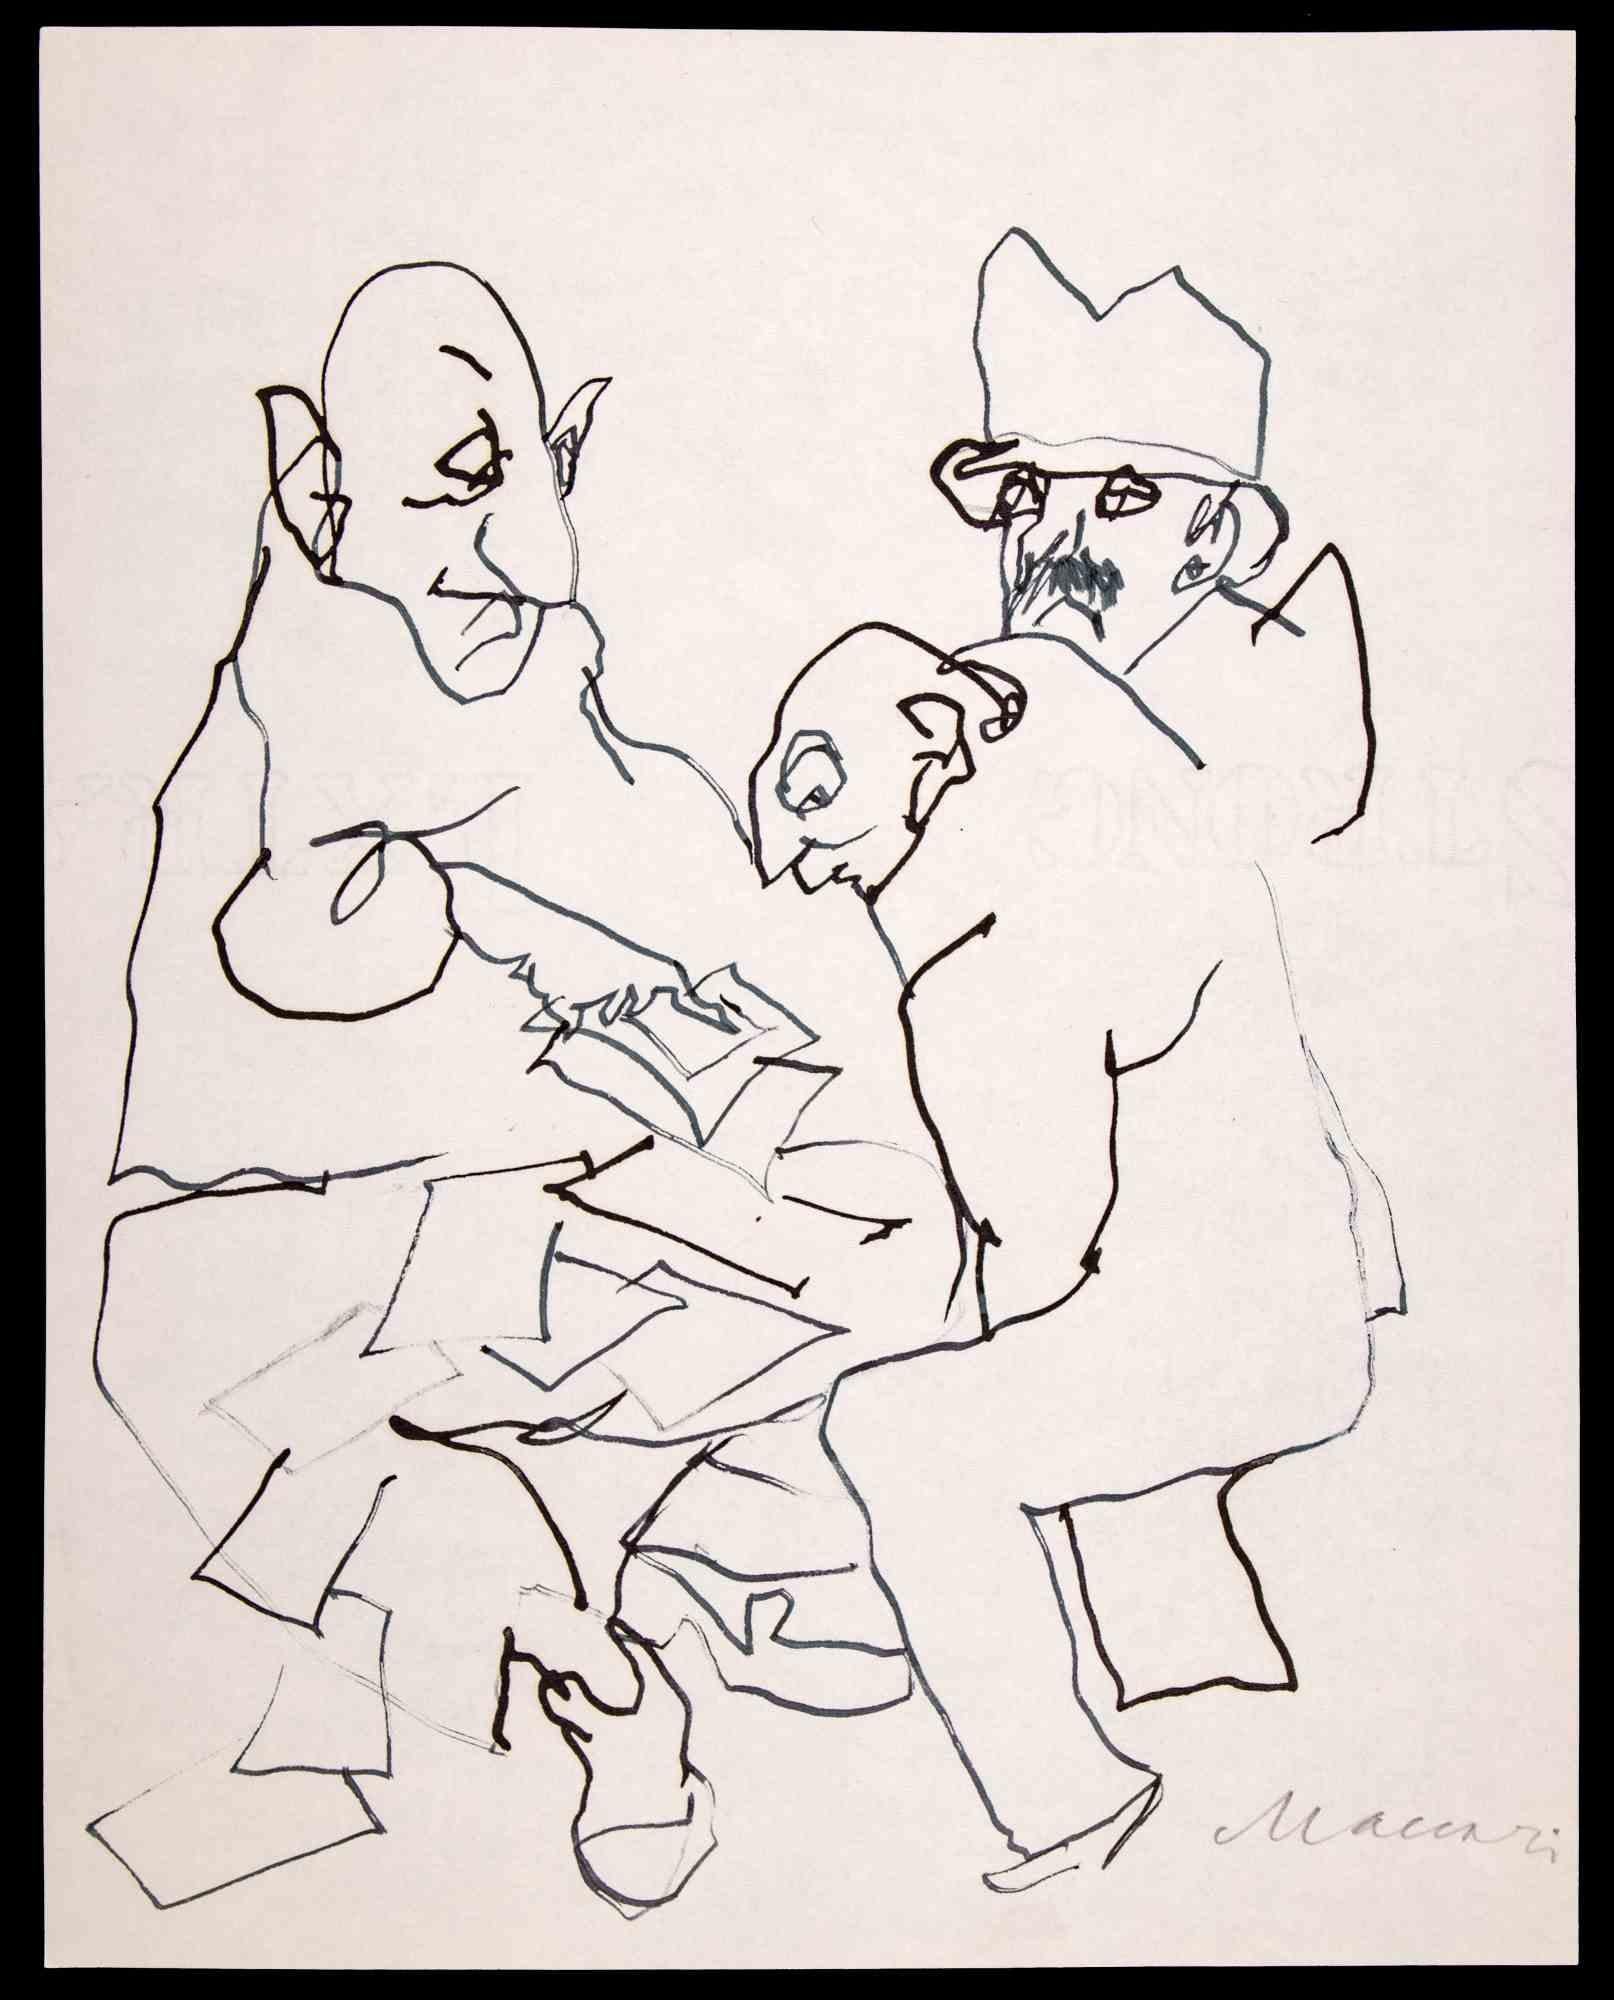 Figuren ist eine Tuschezeichnung von Mino Maccari (1924-1989) aus den 1970er Jahren.

Handsigniert am unteren Rand.

Guter Zustand auf weißem Papier.

Mino Maccari (Siena, 1924-Rom, 16. Juni 1989) war ein italienischer Schriftsteller, Maler, Graveur